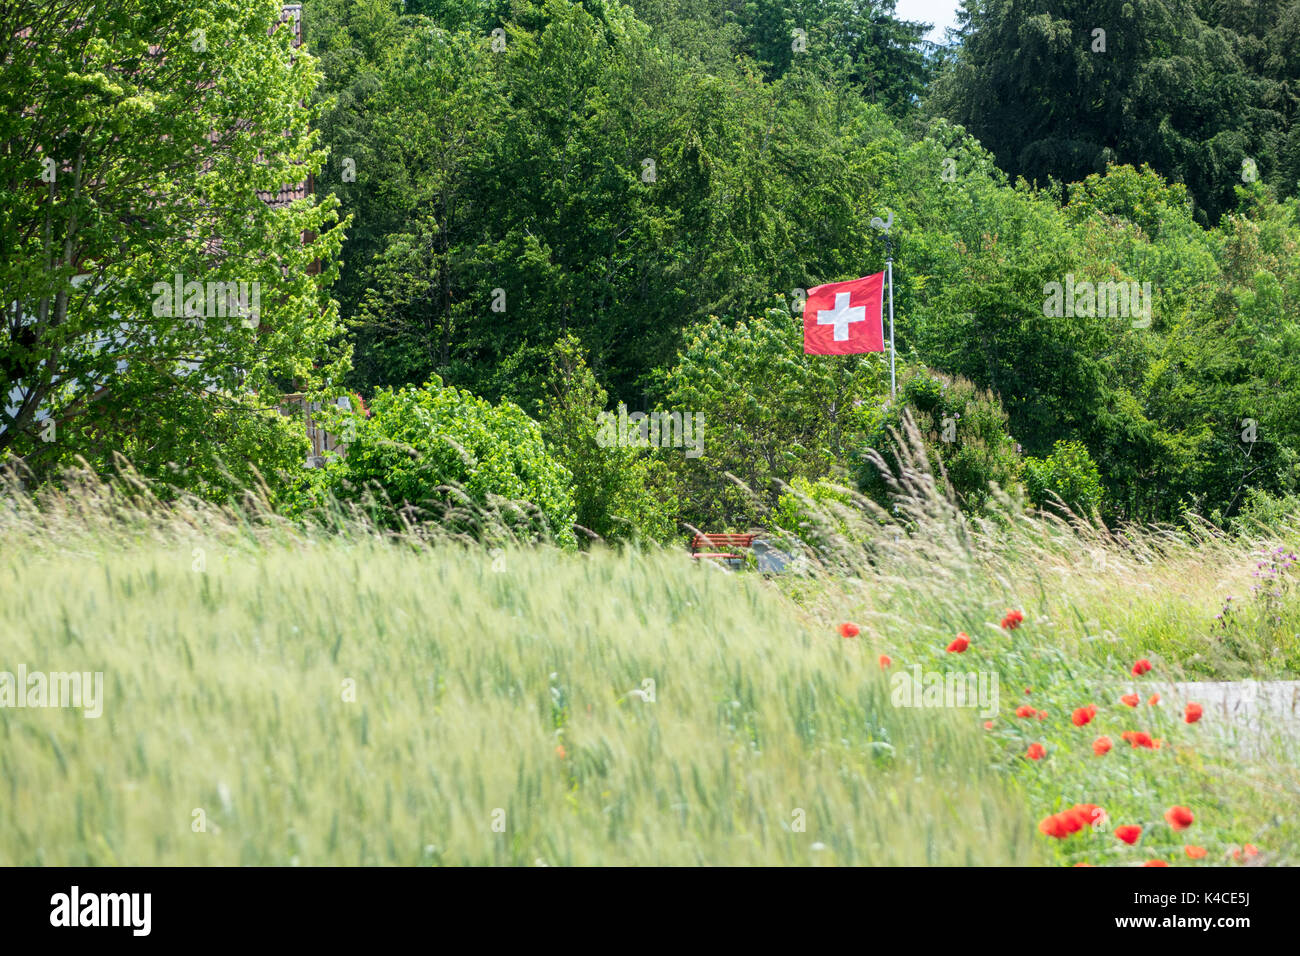 À côté d'un champ de coquelicots rouges mène à un battement de drapeau suisse et banc de jardin en face de la végétation verte Banque D'Images